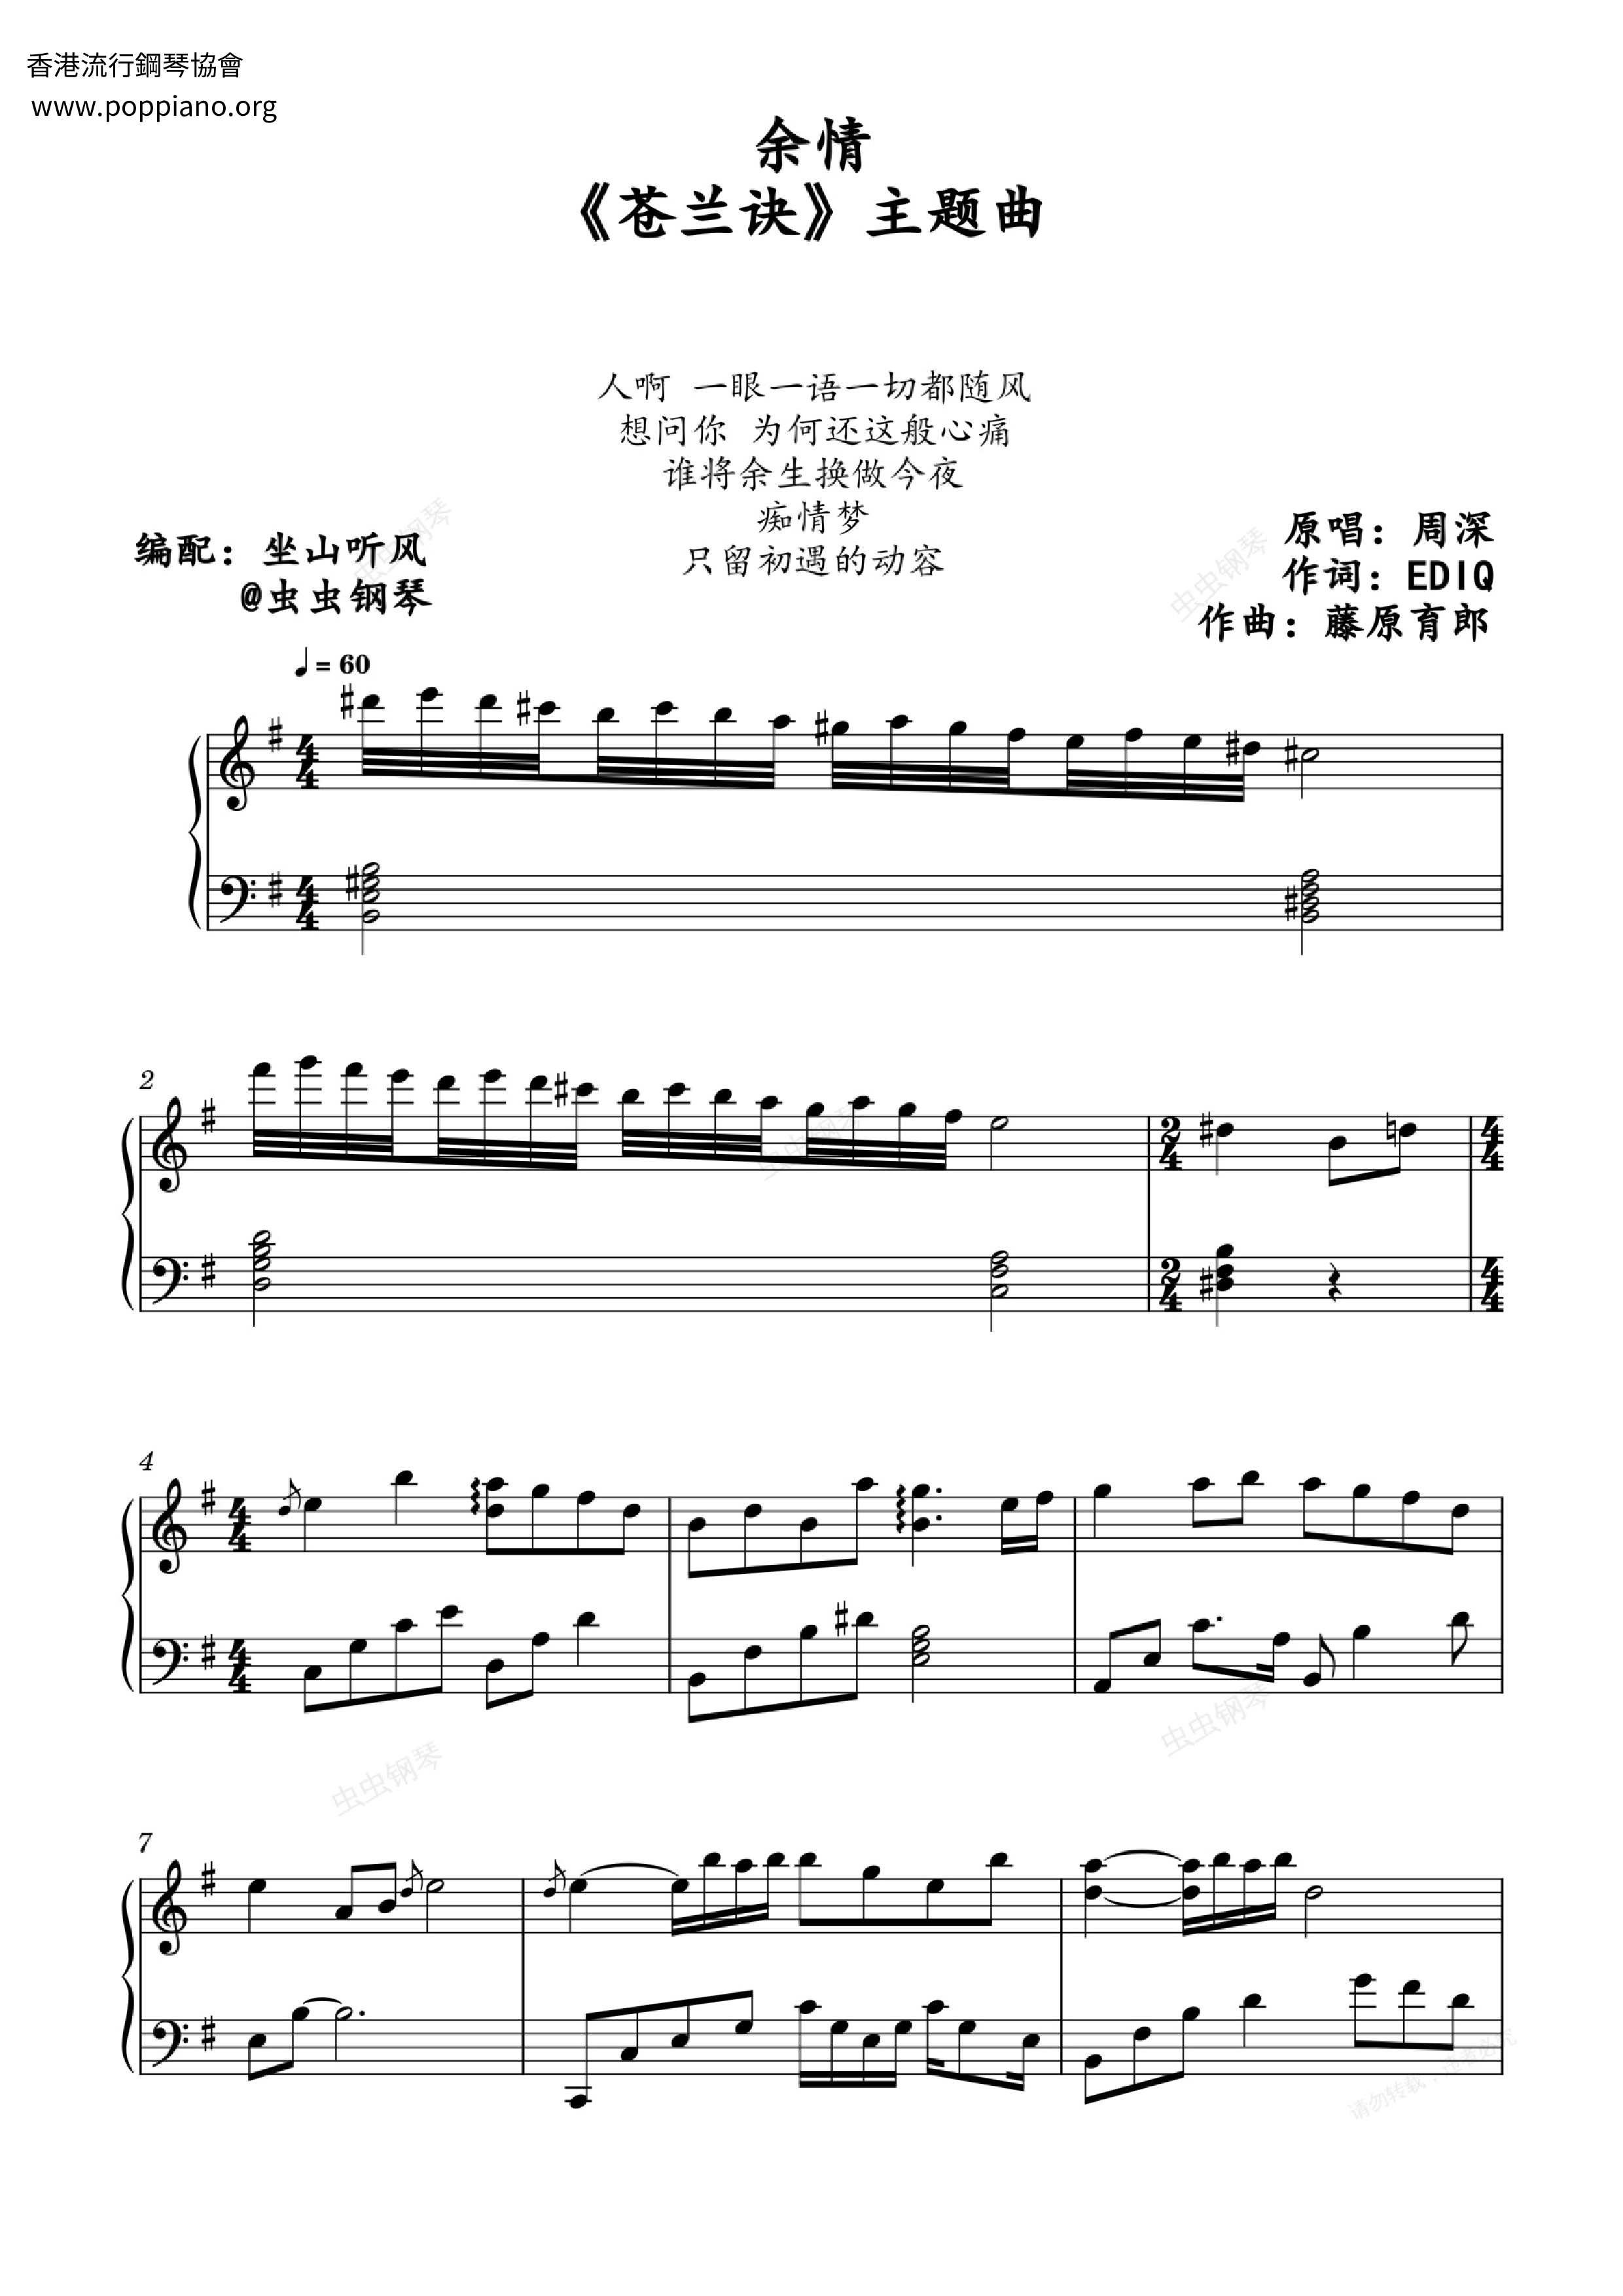 Yu Qing Score